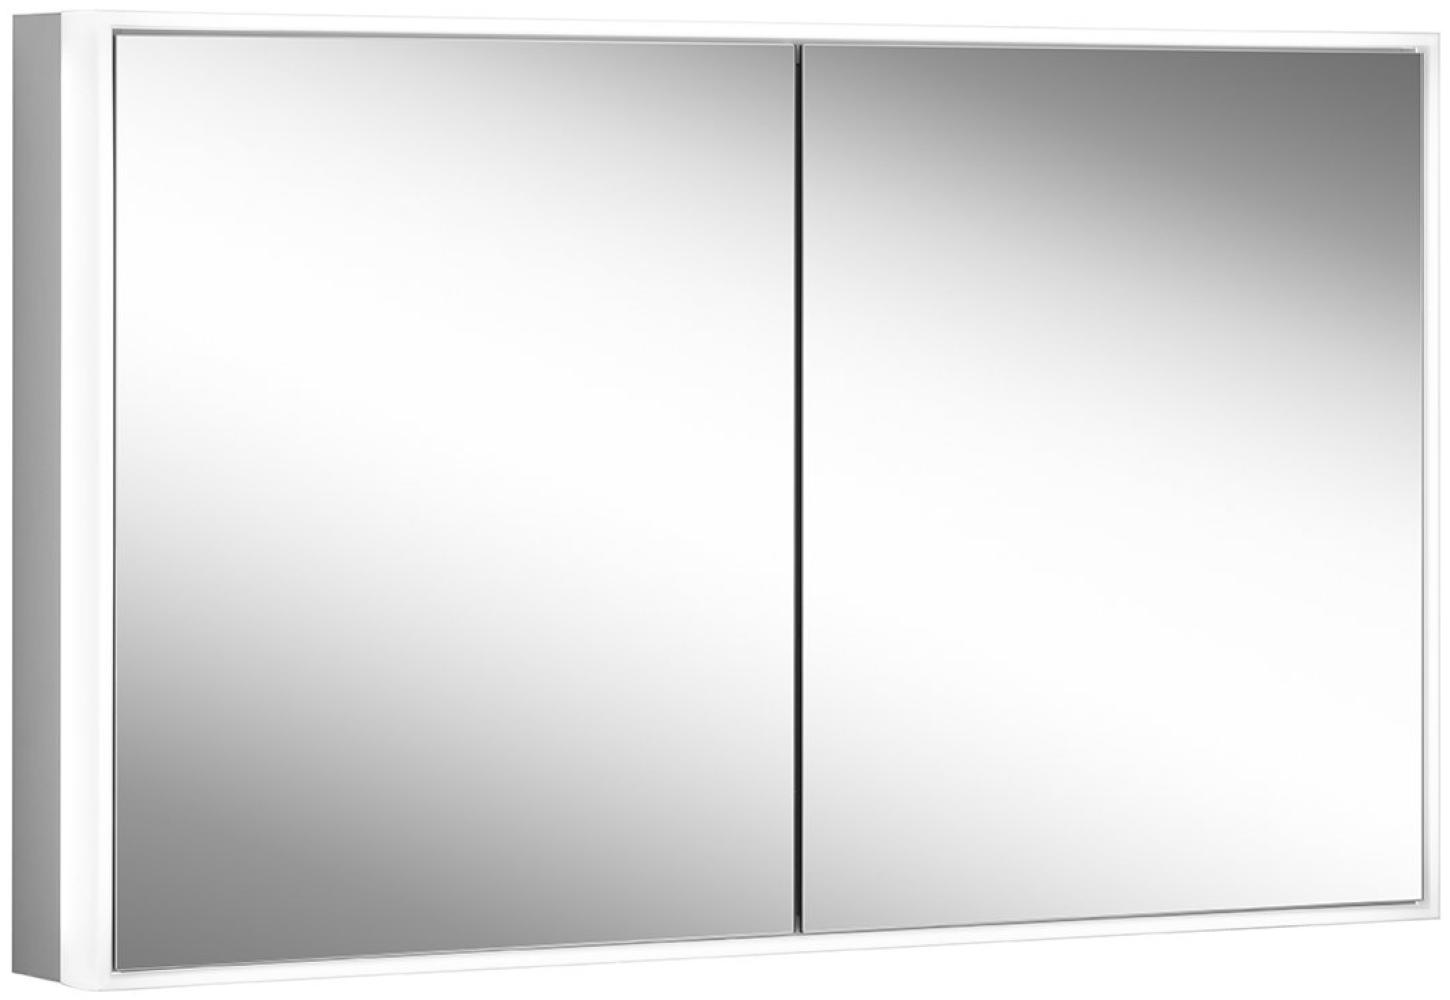 Schneider PREMIUM Line Ultimate LED Lichtspiegelschrank, 2 Doppelspiegeltüren, 1325x73,3x15,8cm, 182. 130, Ausführung: EU-Norm/Korpus silber eloxiert - 182. 130. 02. 50 Bild 1